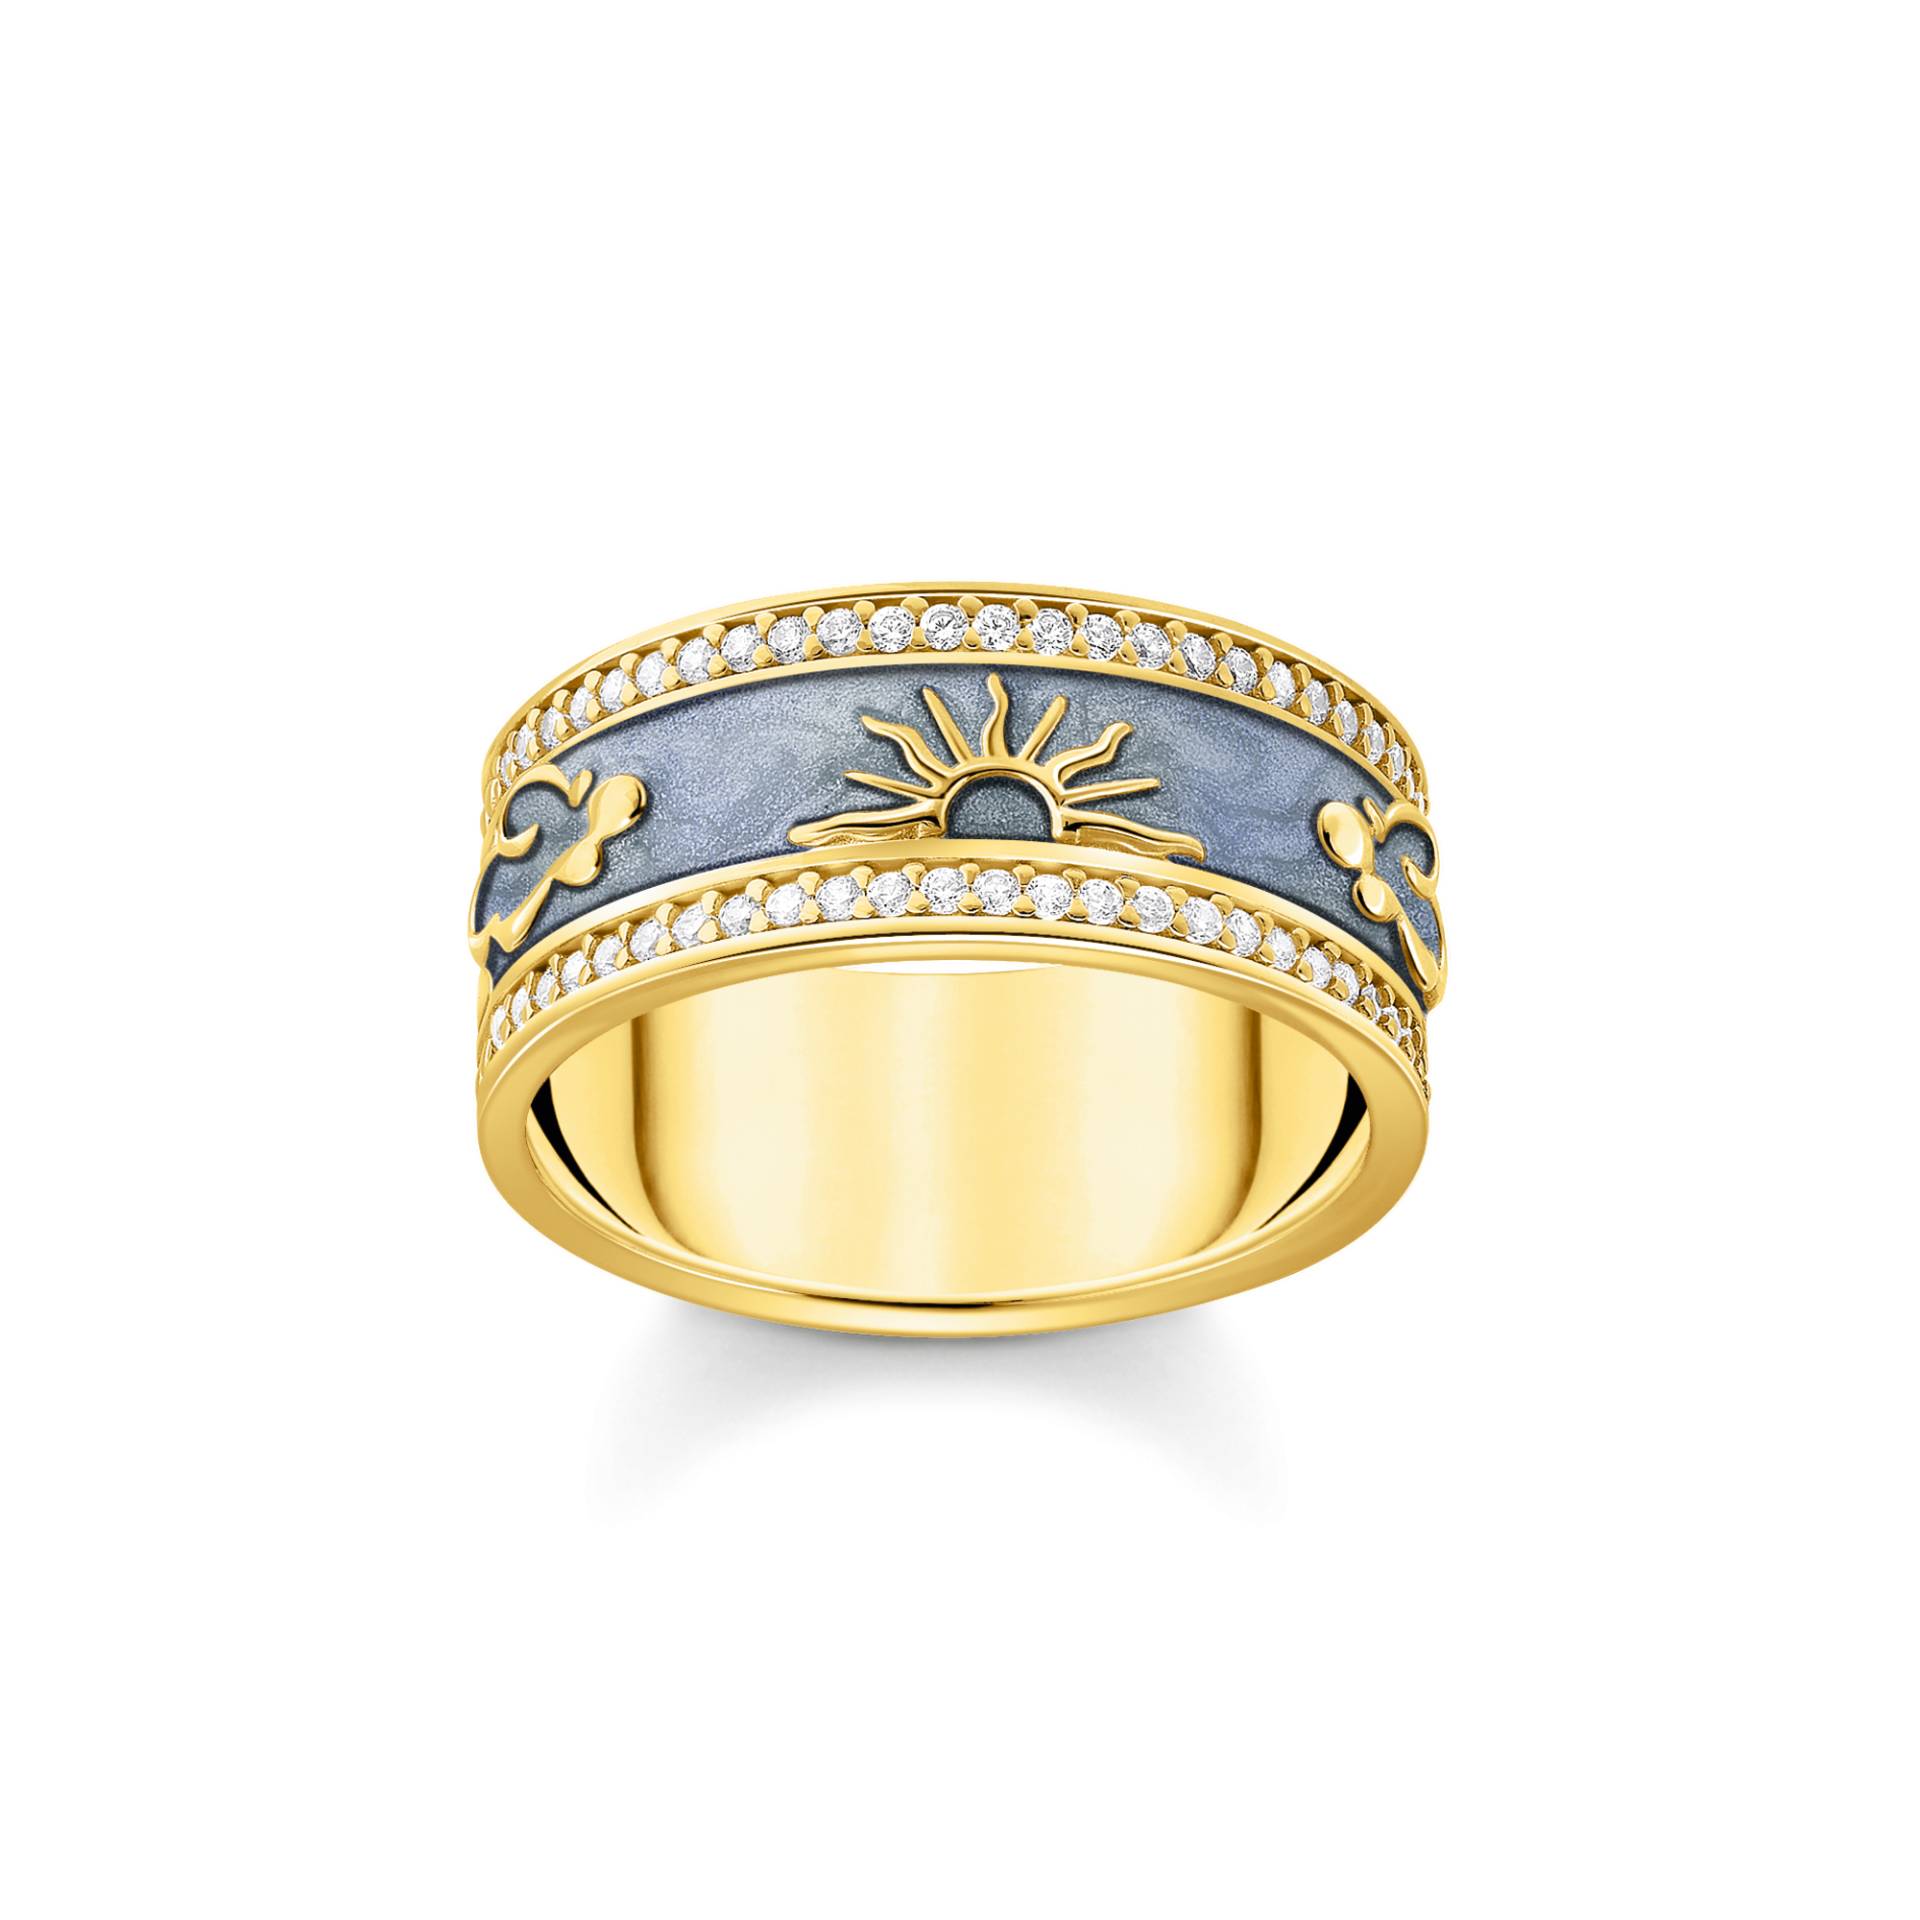 Thomas Sabo Ring blau mit kosmischen Symbolen vergoldet blau TR2450-565-1-50 von Thomas Sabo